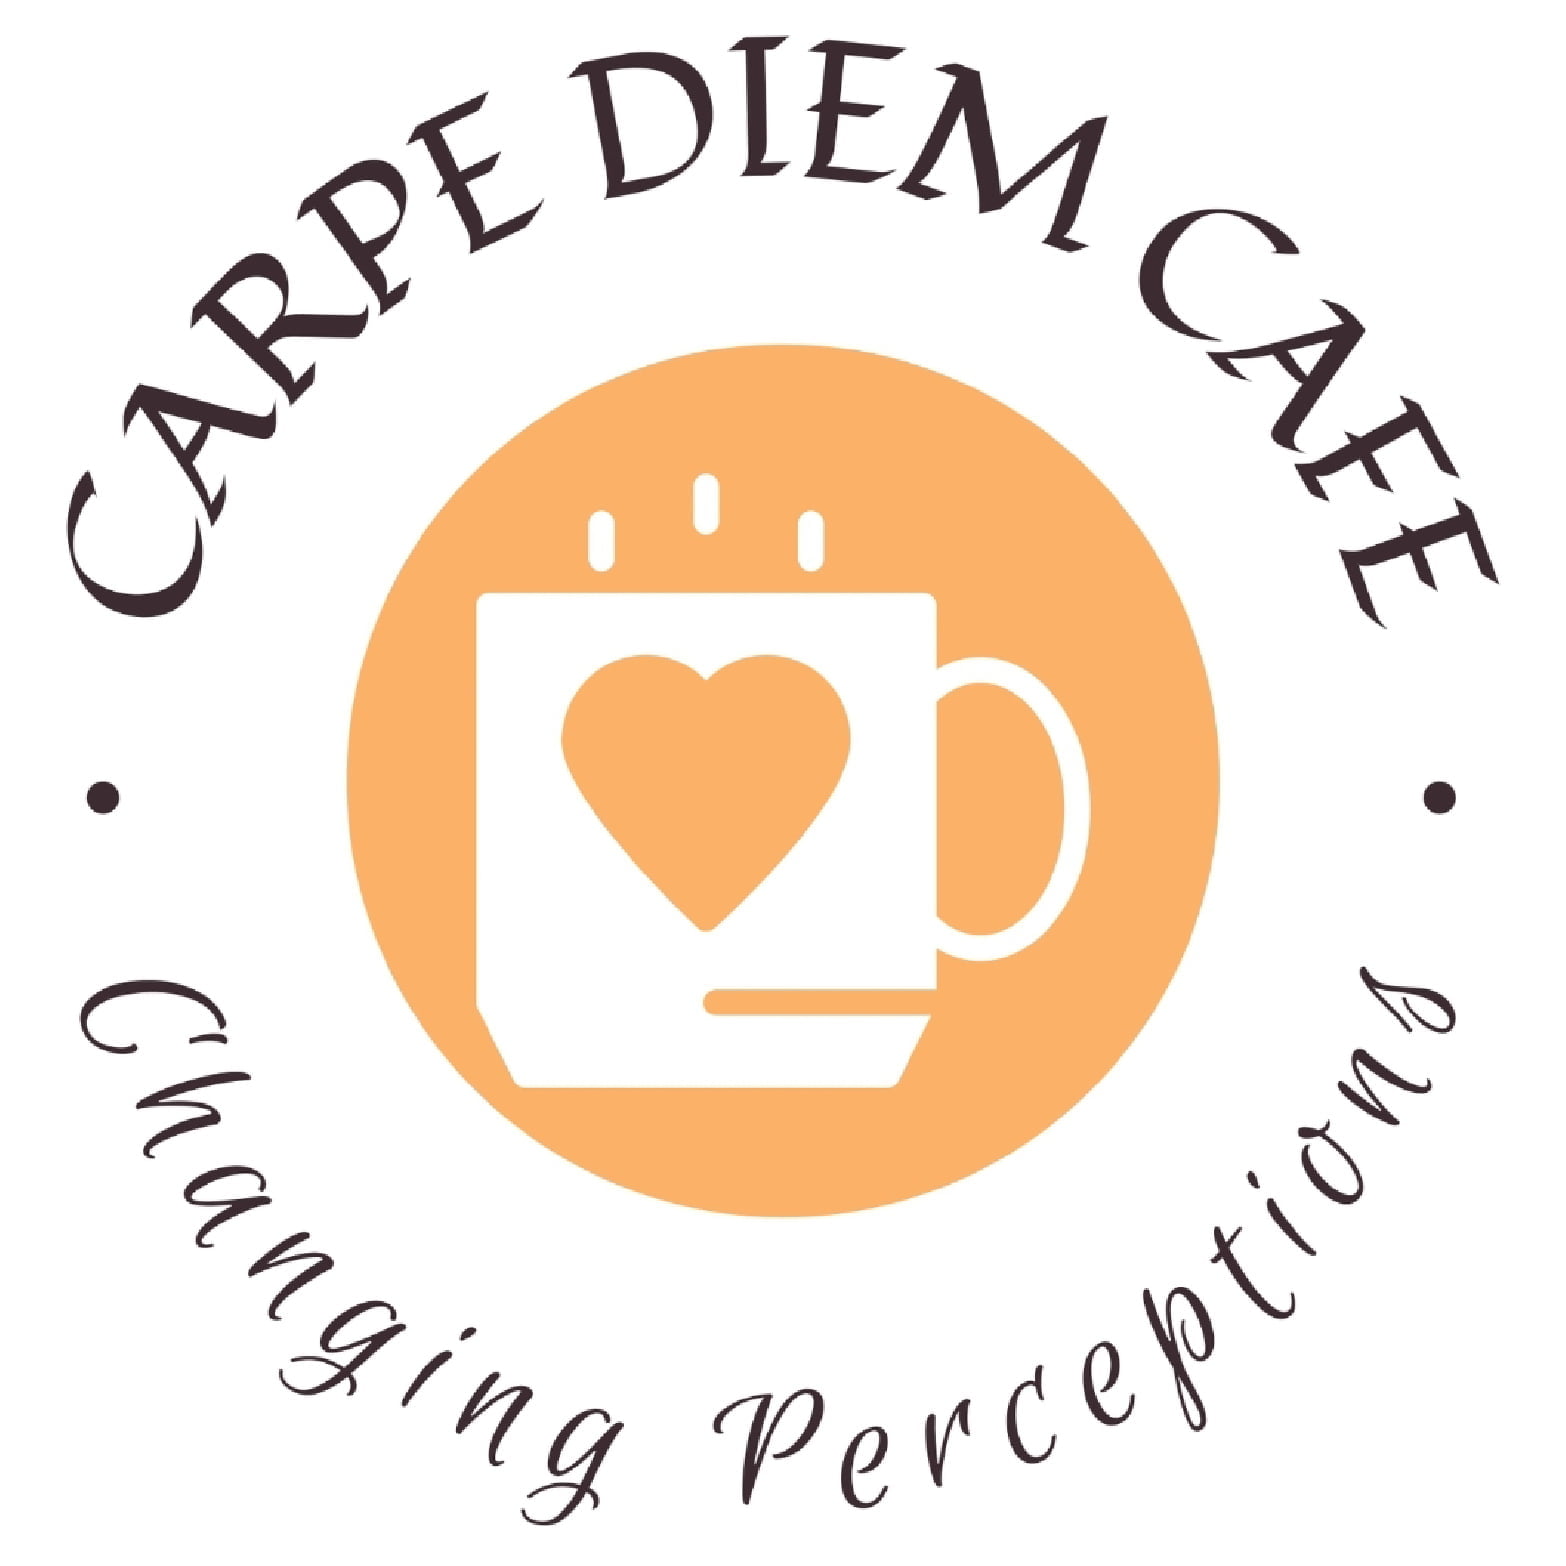 Carpe Diem Cafe